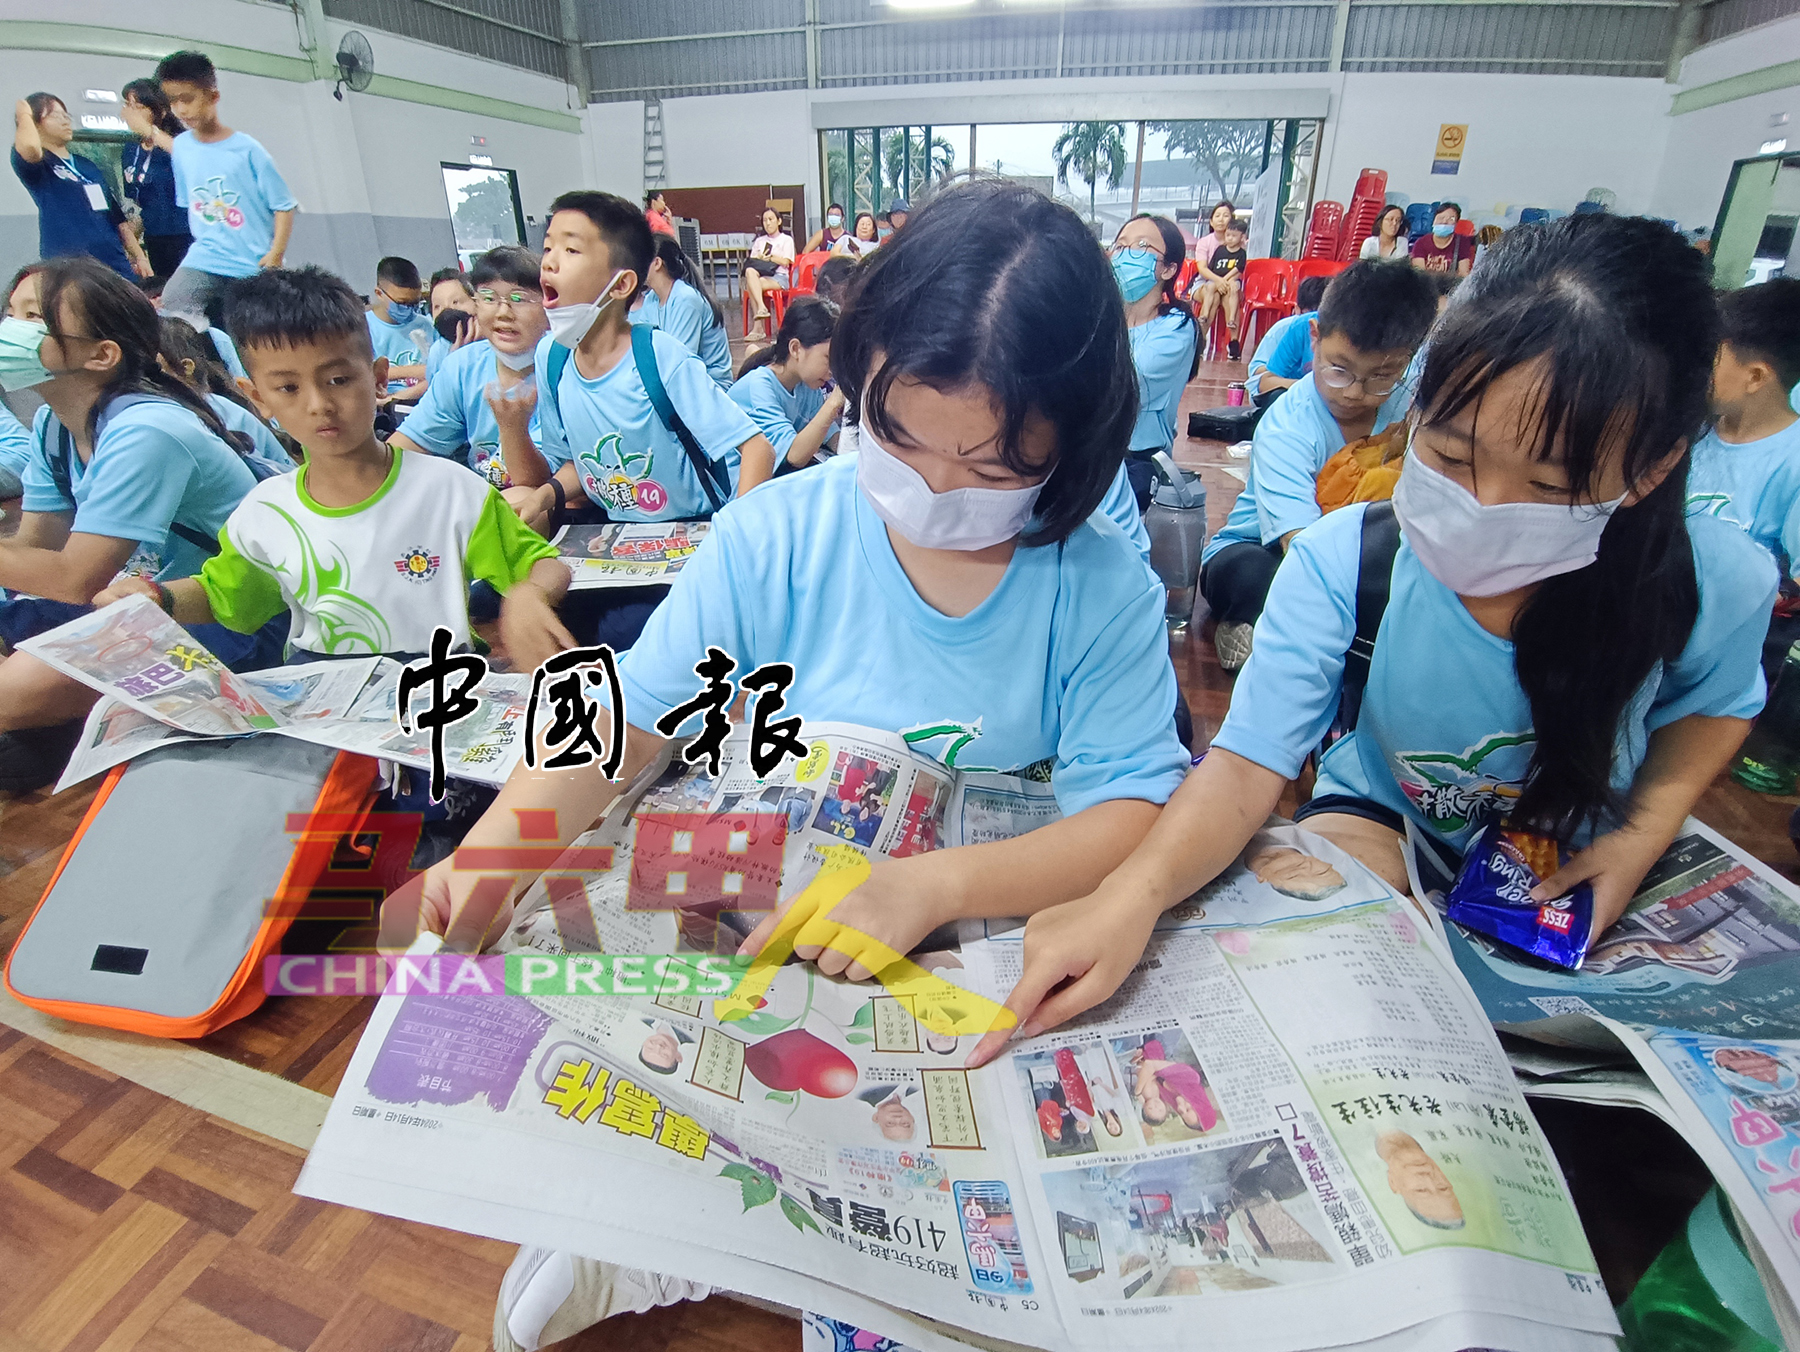 ■小学生们一起阅读《中国报》。